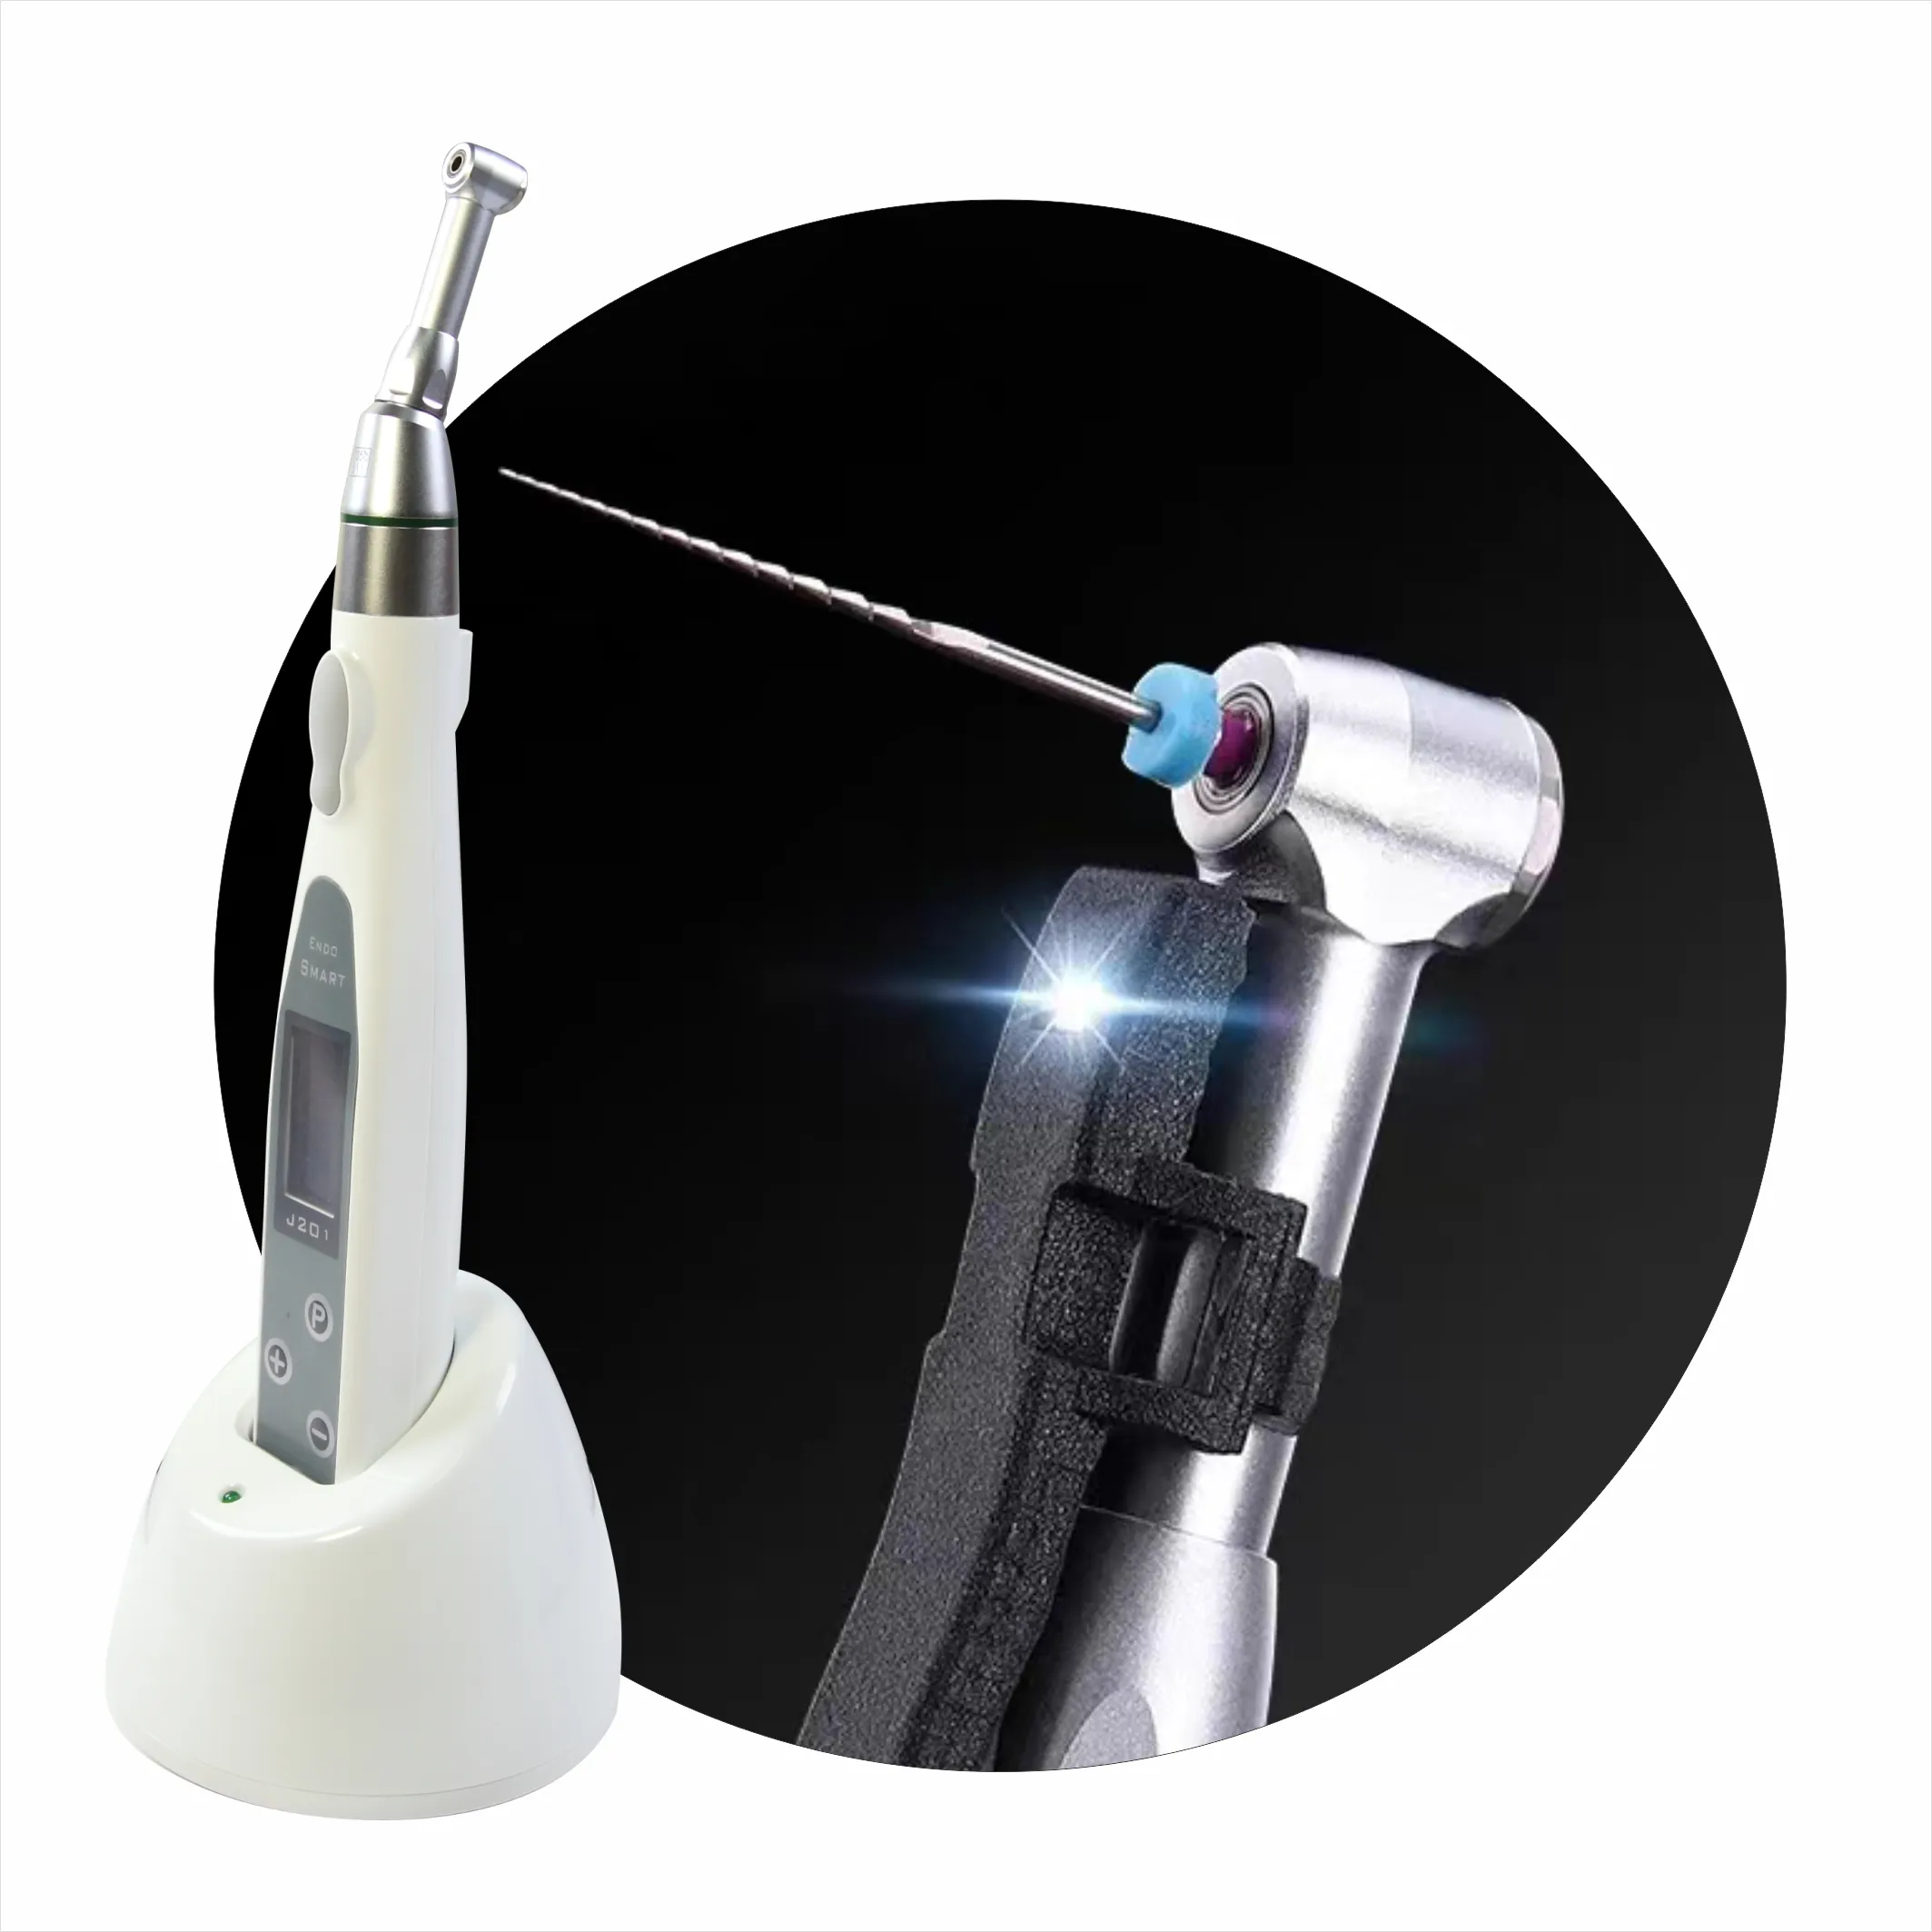 Mesin portable, motor genggam listrik dental, lampu led penyembuhan gigi